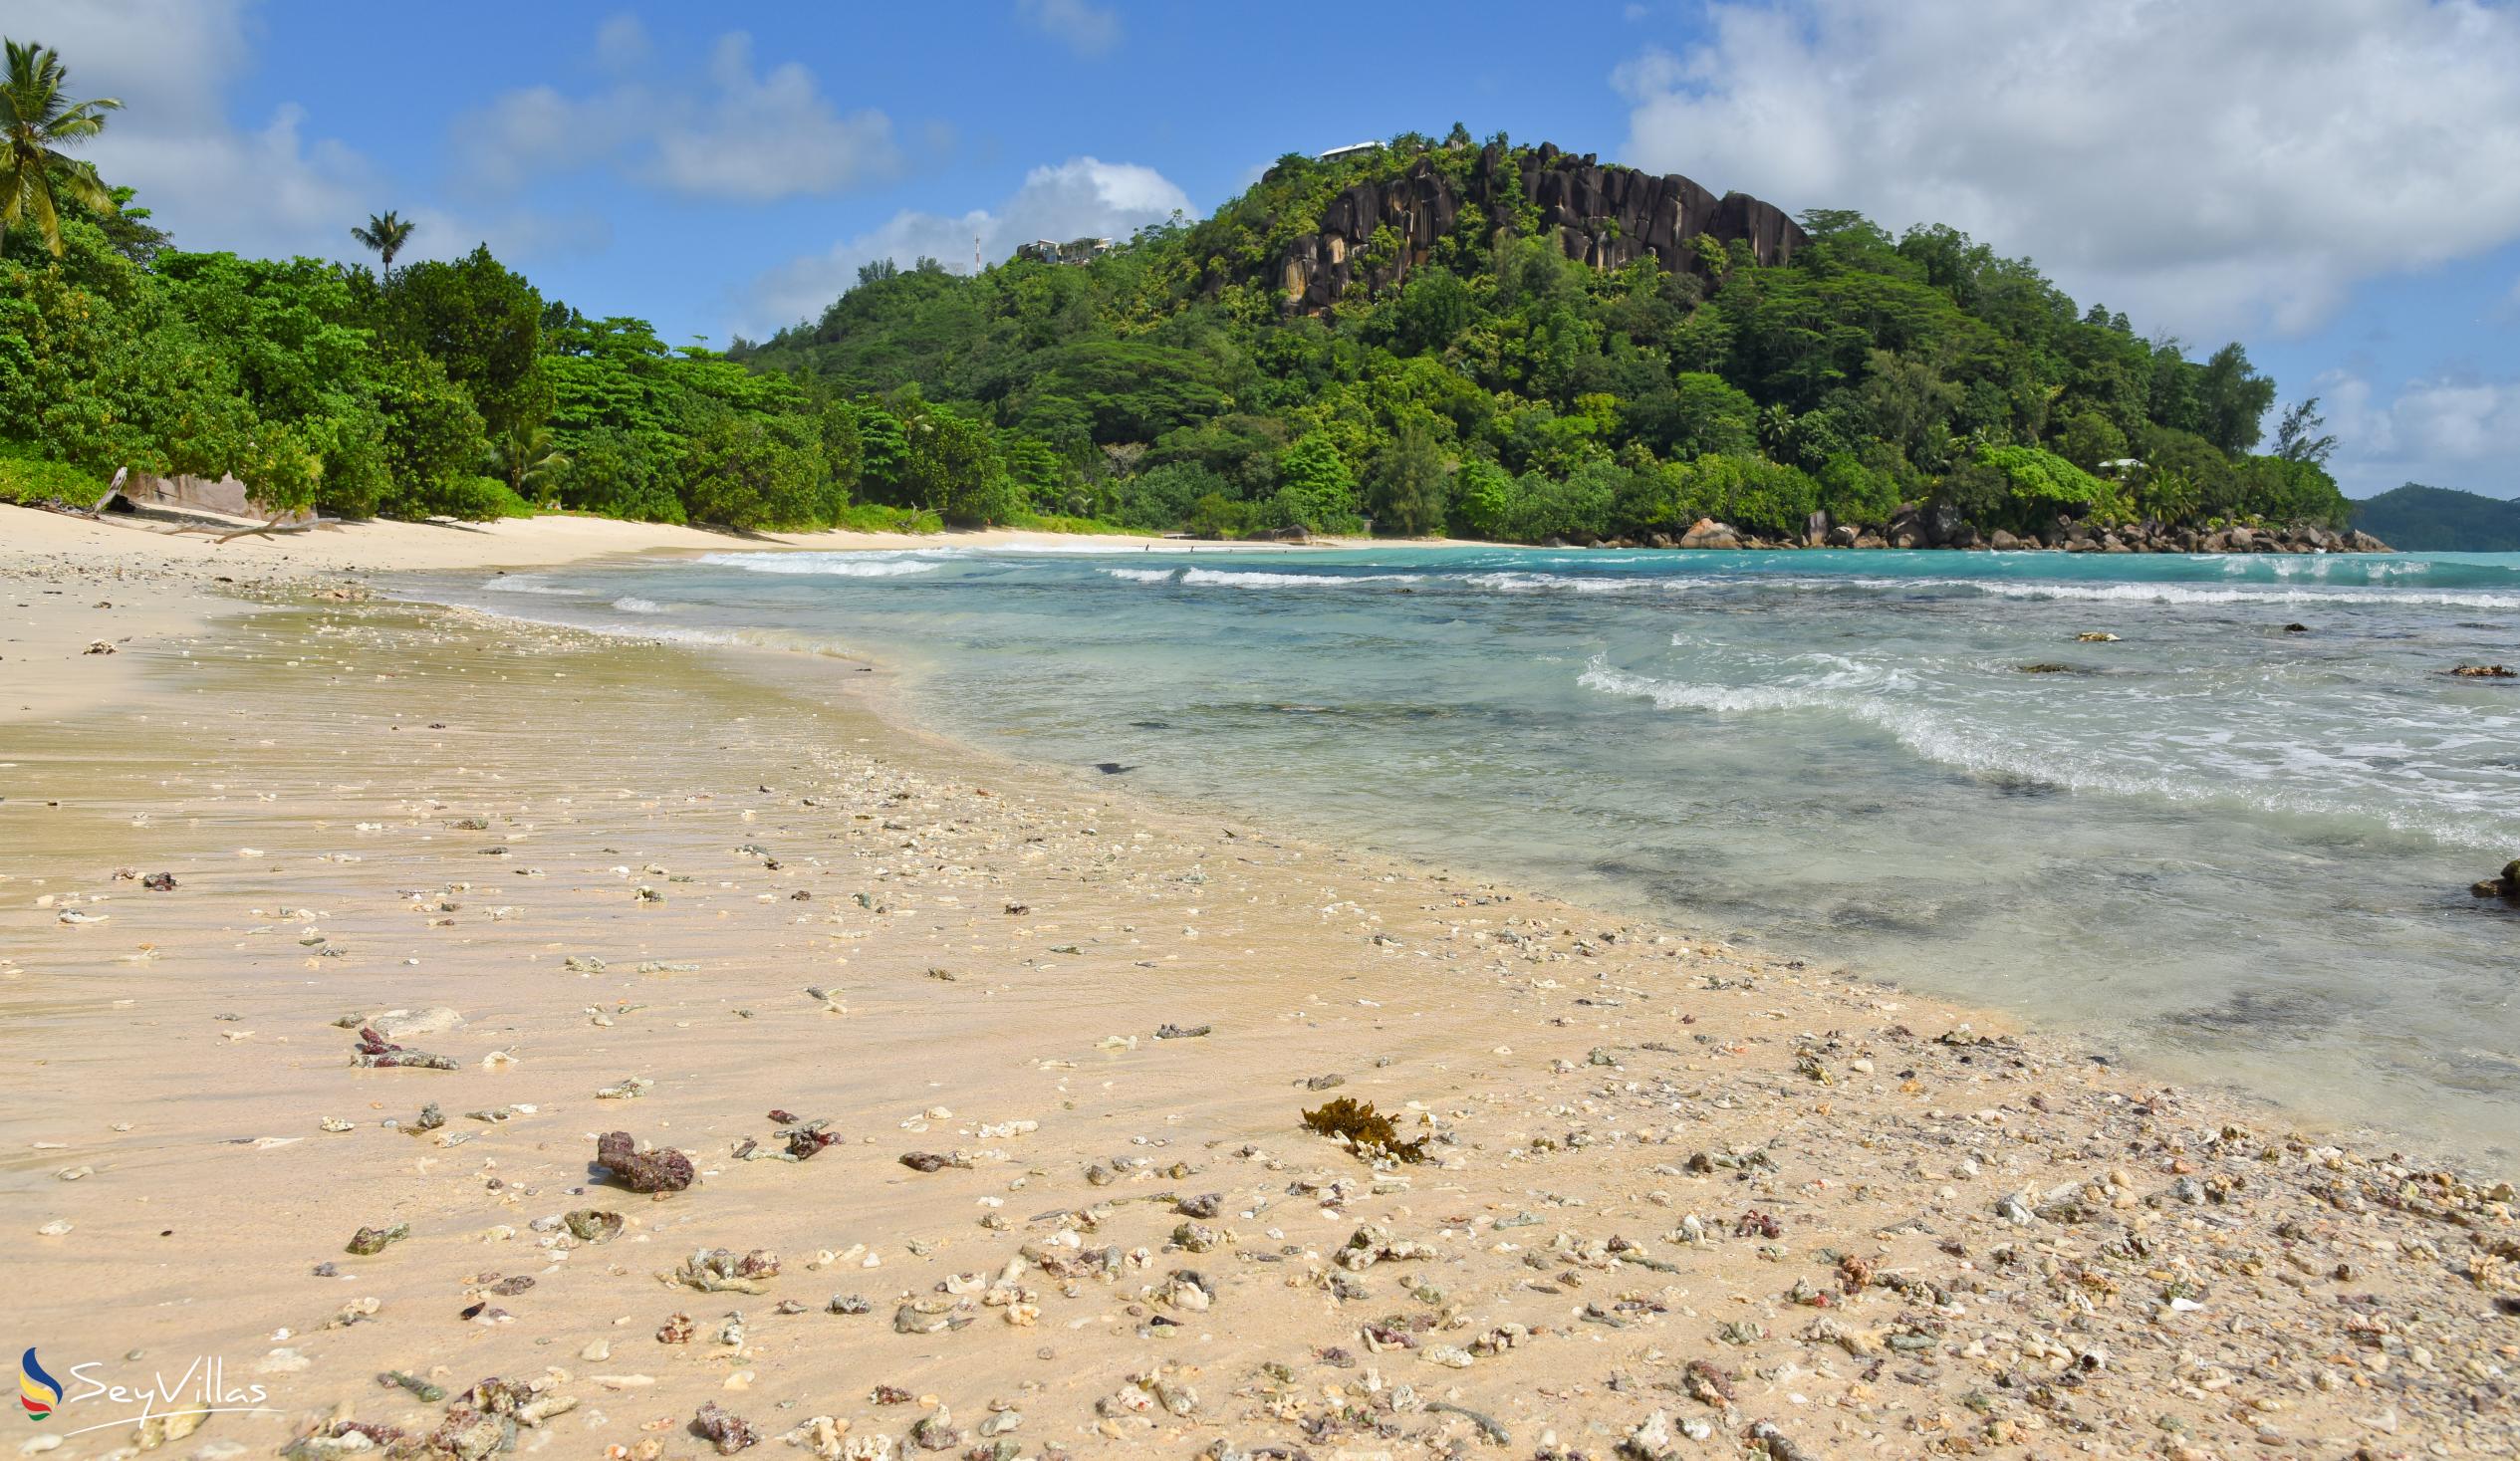 Foto 15: Anse Louis - Mahé (Seychelles)